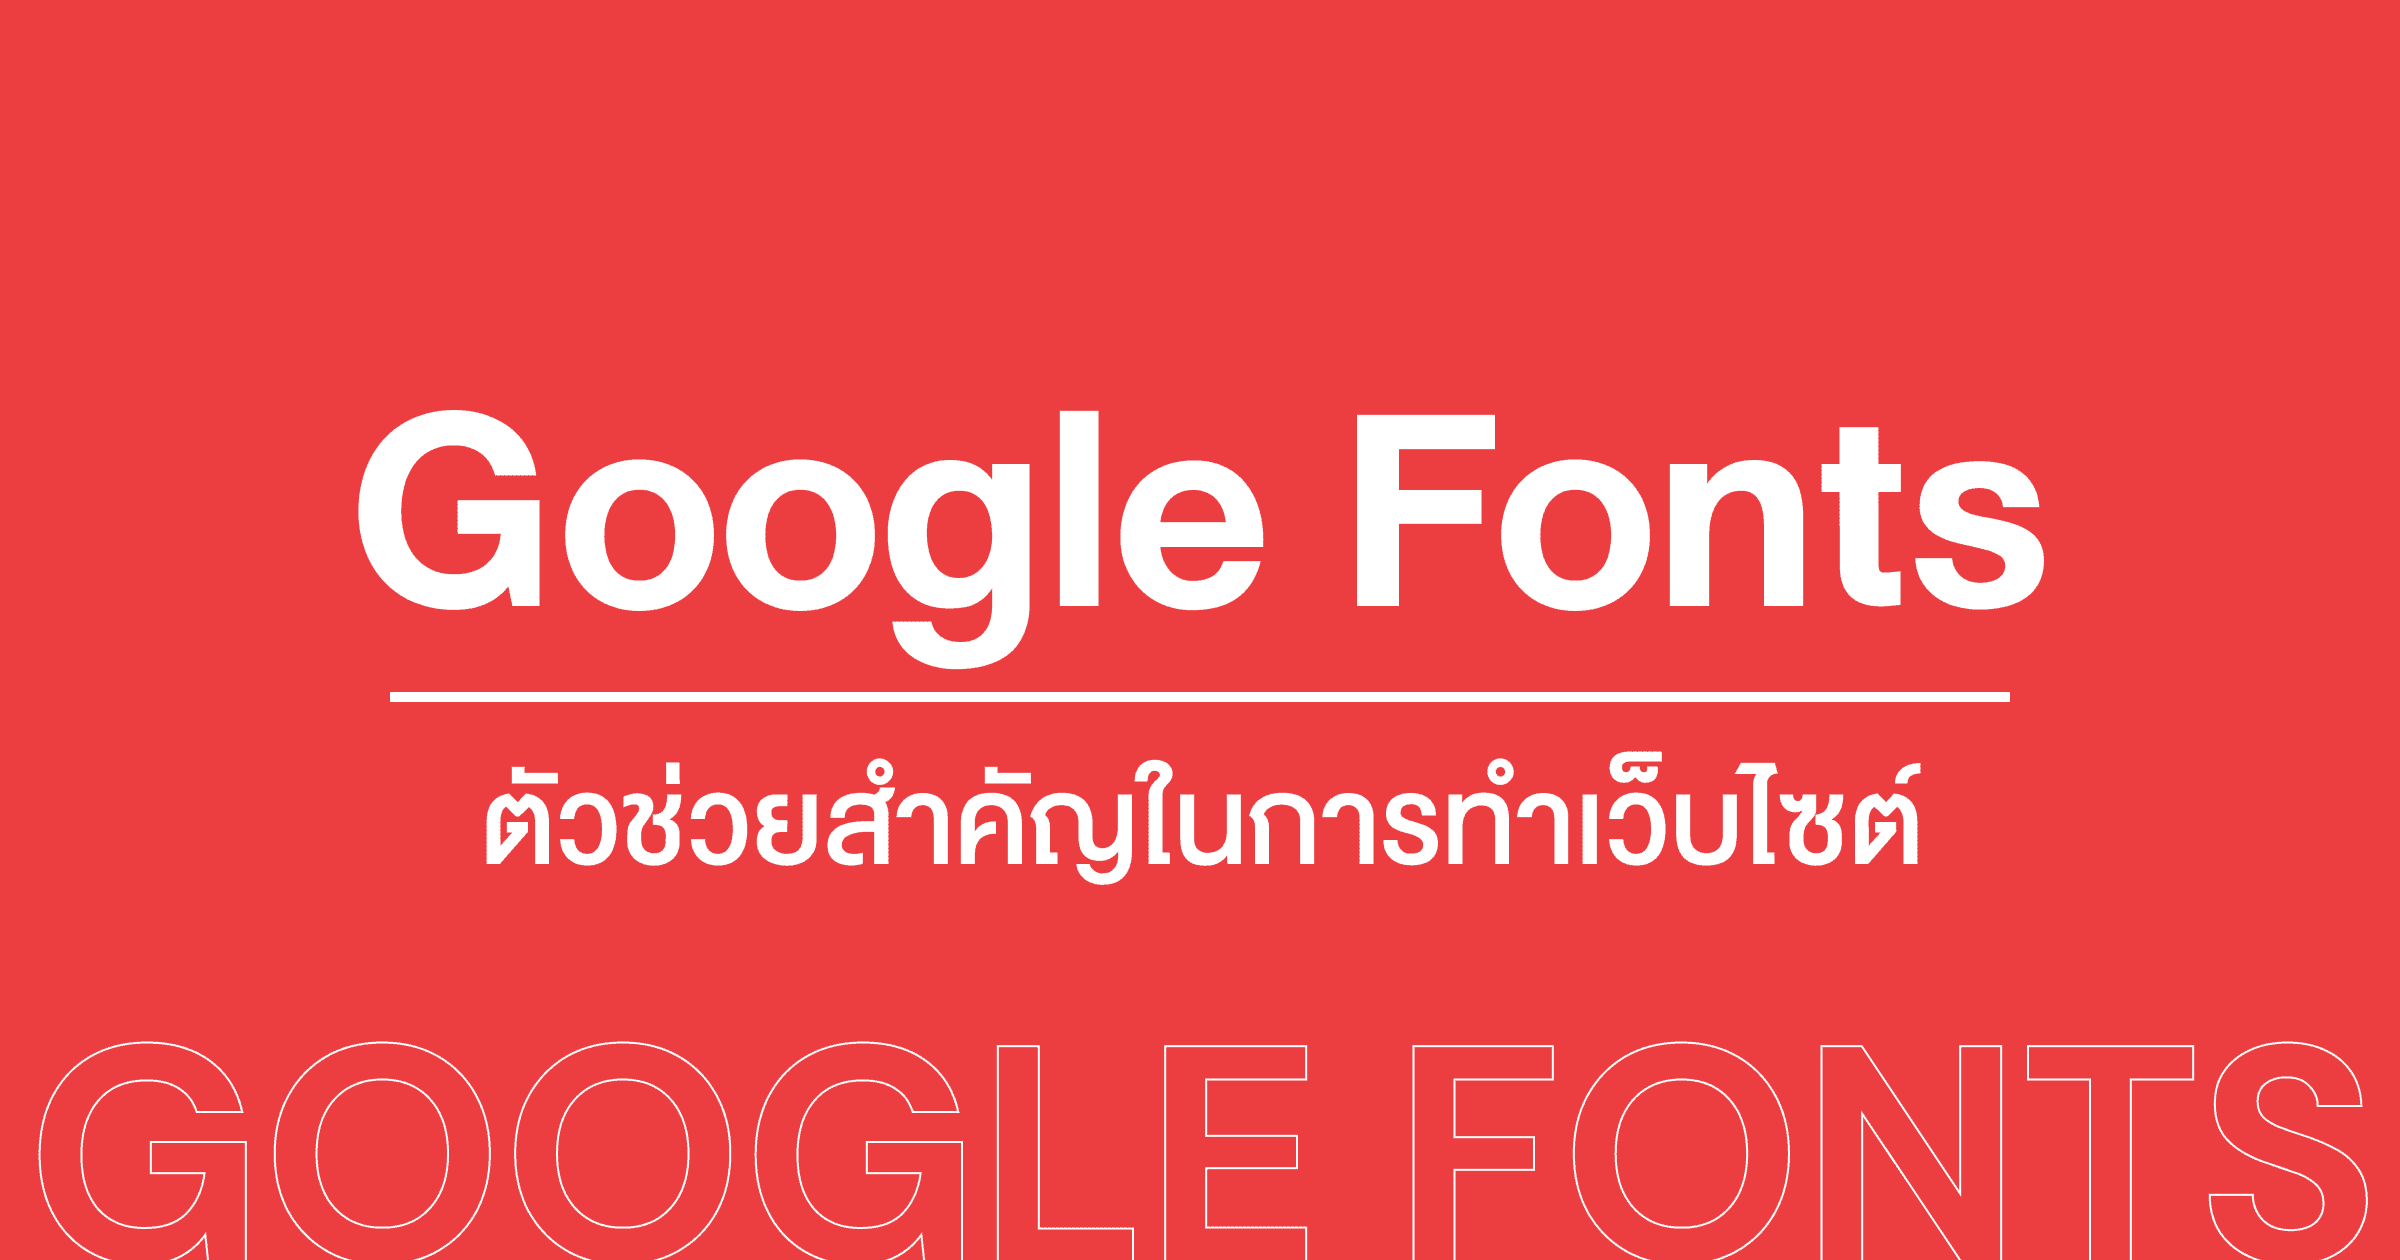 Google Font ฟ้อนต์สวย ใช้งานฟรี ตัวช่วยสำคัญในการทำเว็บไซต์